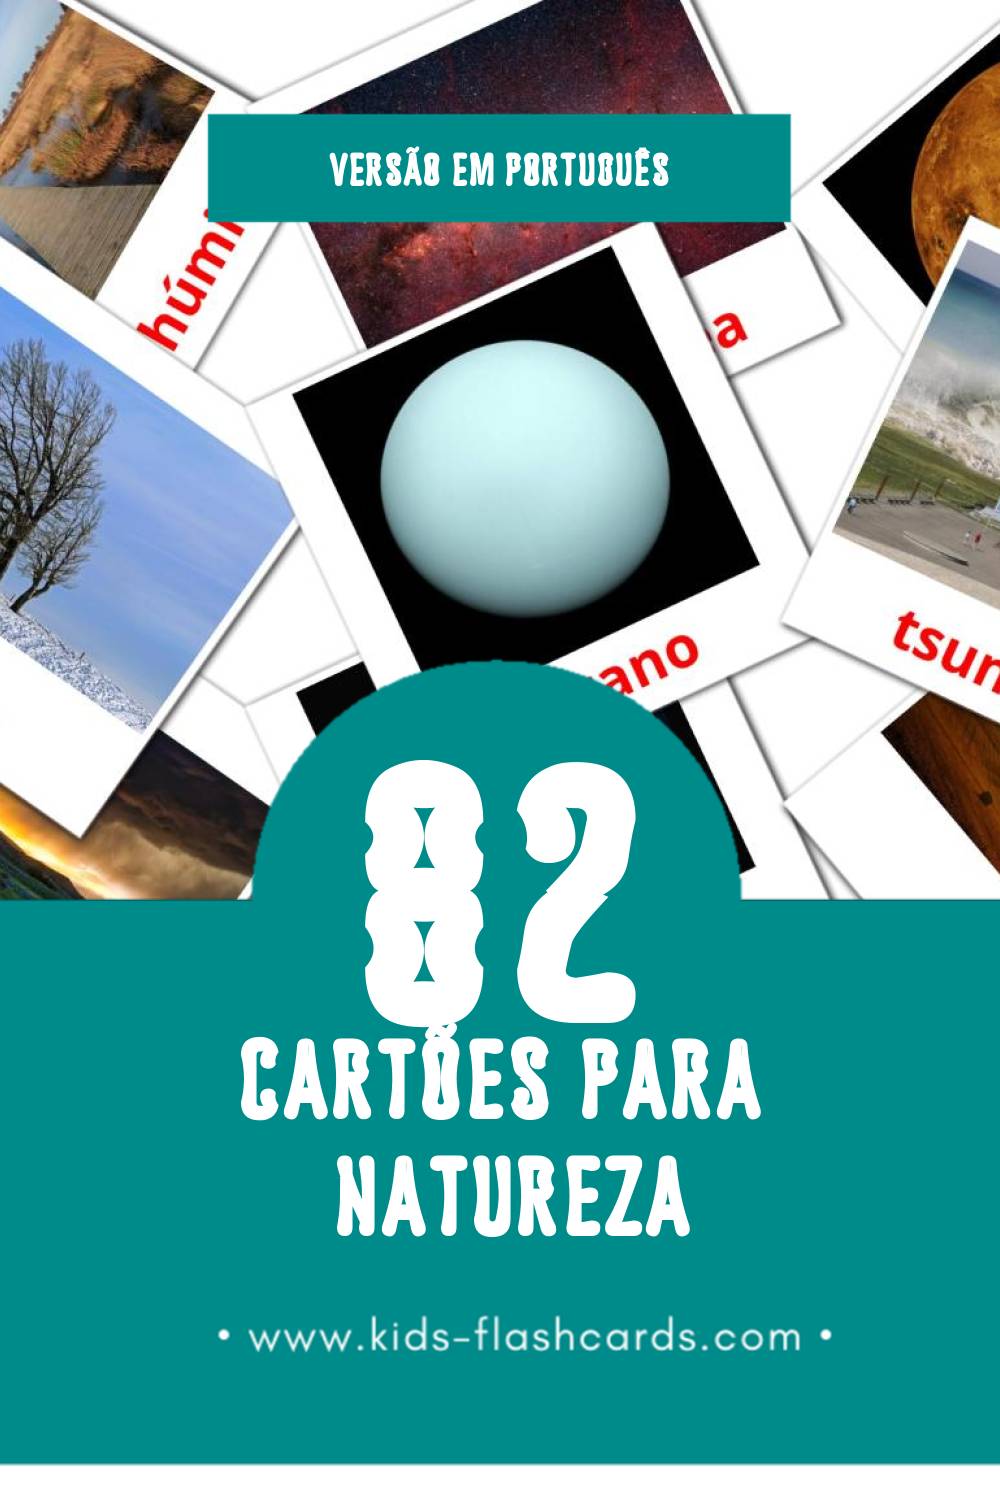 Flashcards de Natureza Visuais para Toddlers (82 cartões em Português)